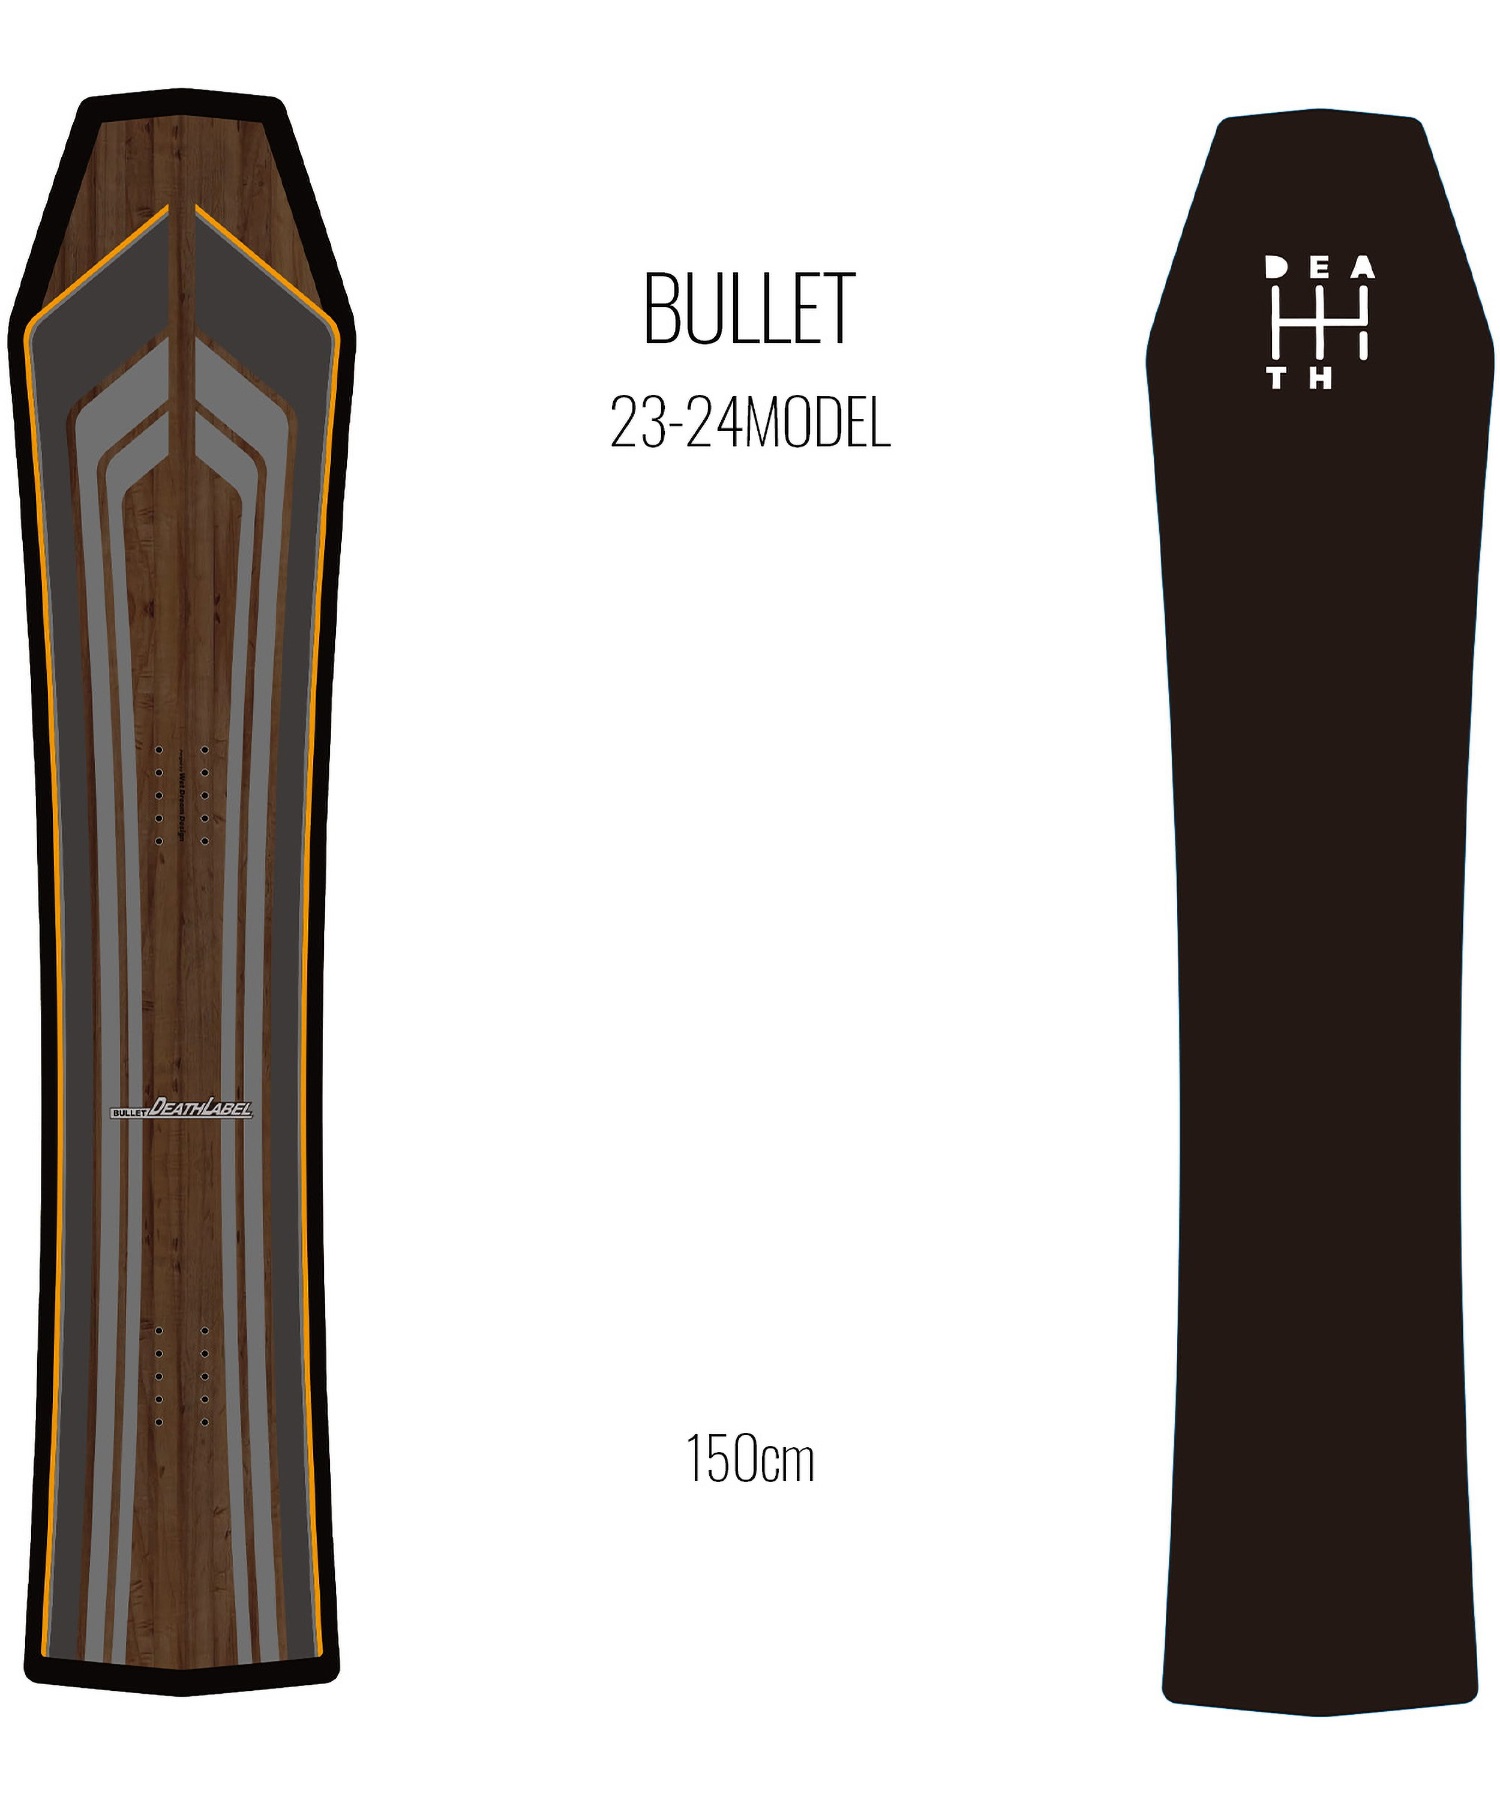 【早期購入/店頭受取対象外】スノーボード 板 メンズ DEATH LABEL デスレーベル BULLET 23-24モデル ムラサキスポーツ KK C2(BULLET-150cm)